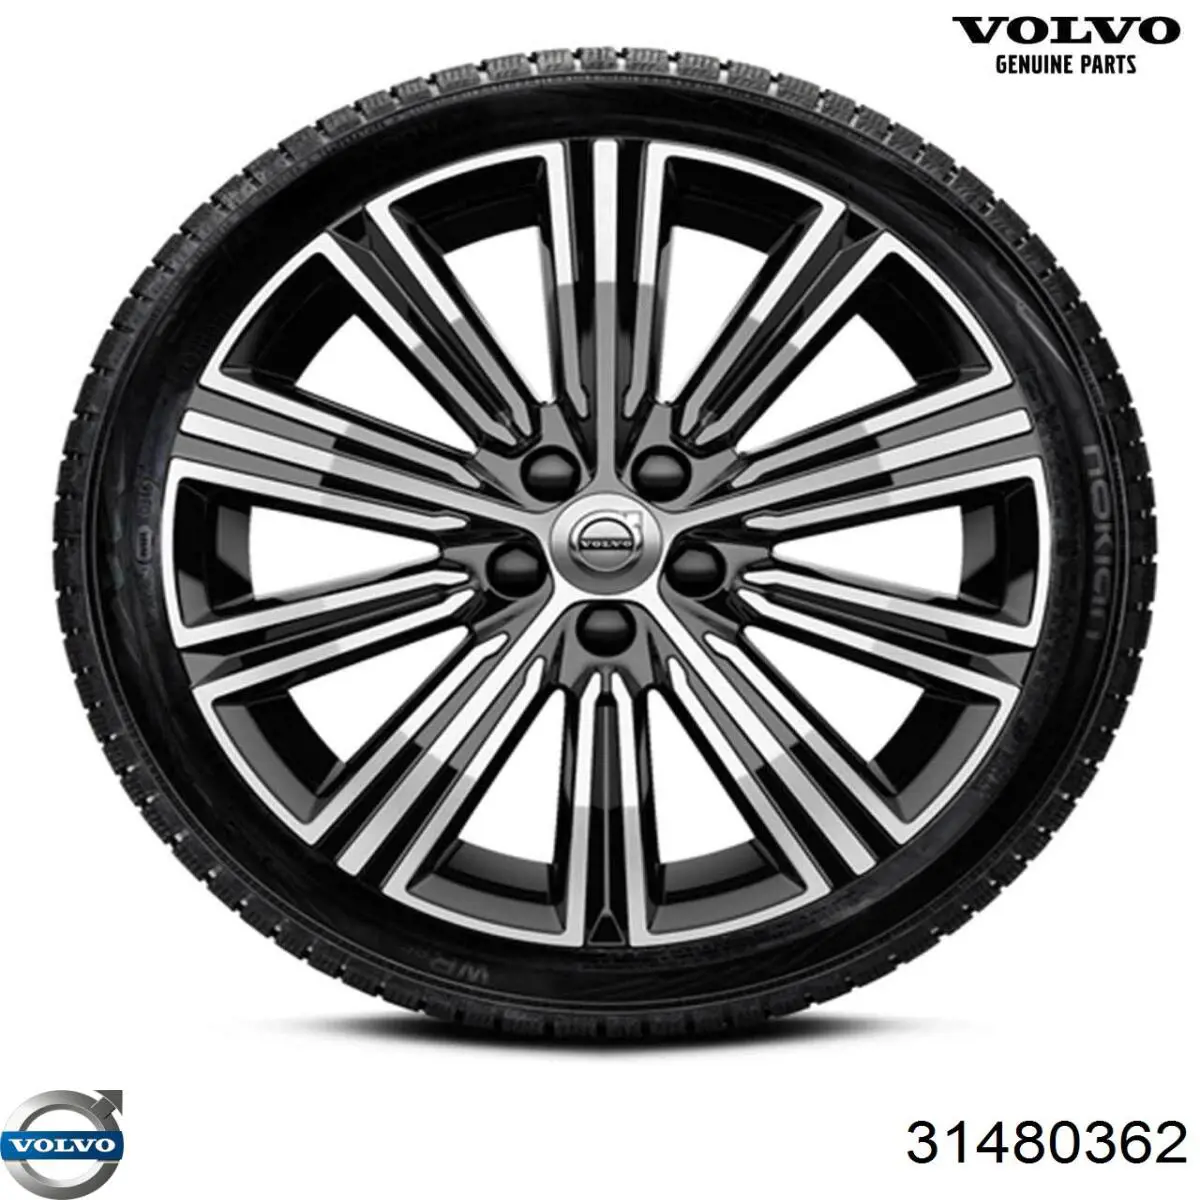 Correa de transmisión para Volvo V40 (525, 526)